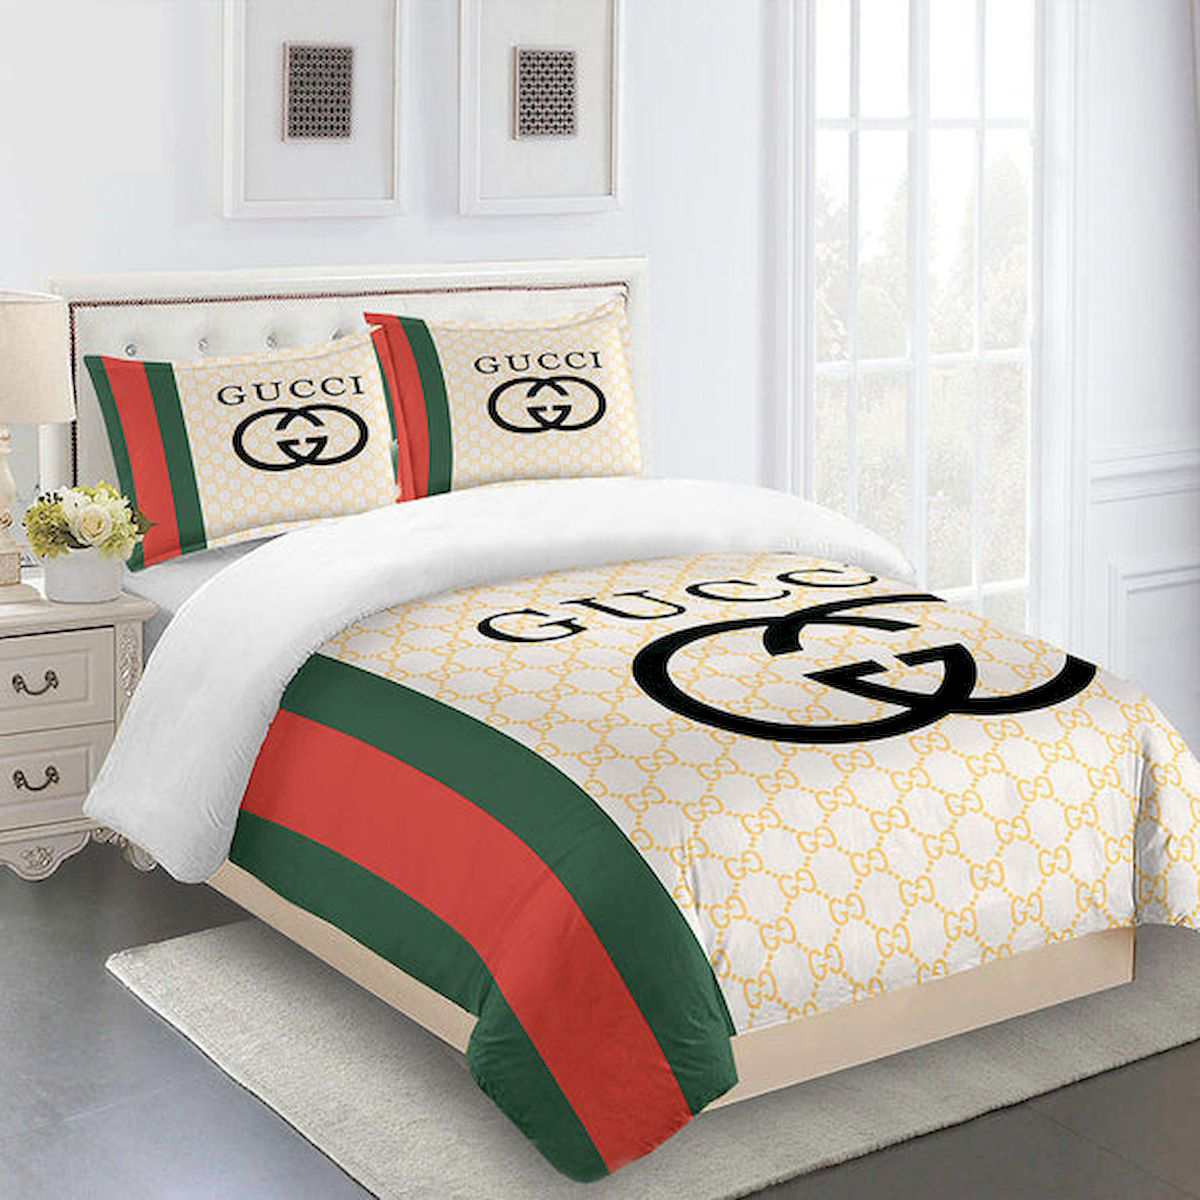 GC Stripe Luxury Brand High-End Bedding Set Home Decor HT Mia01